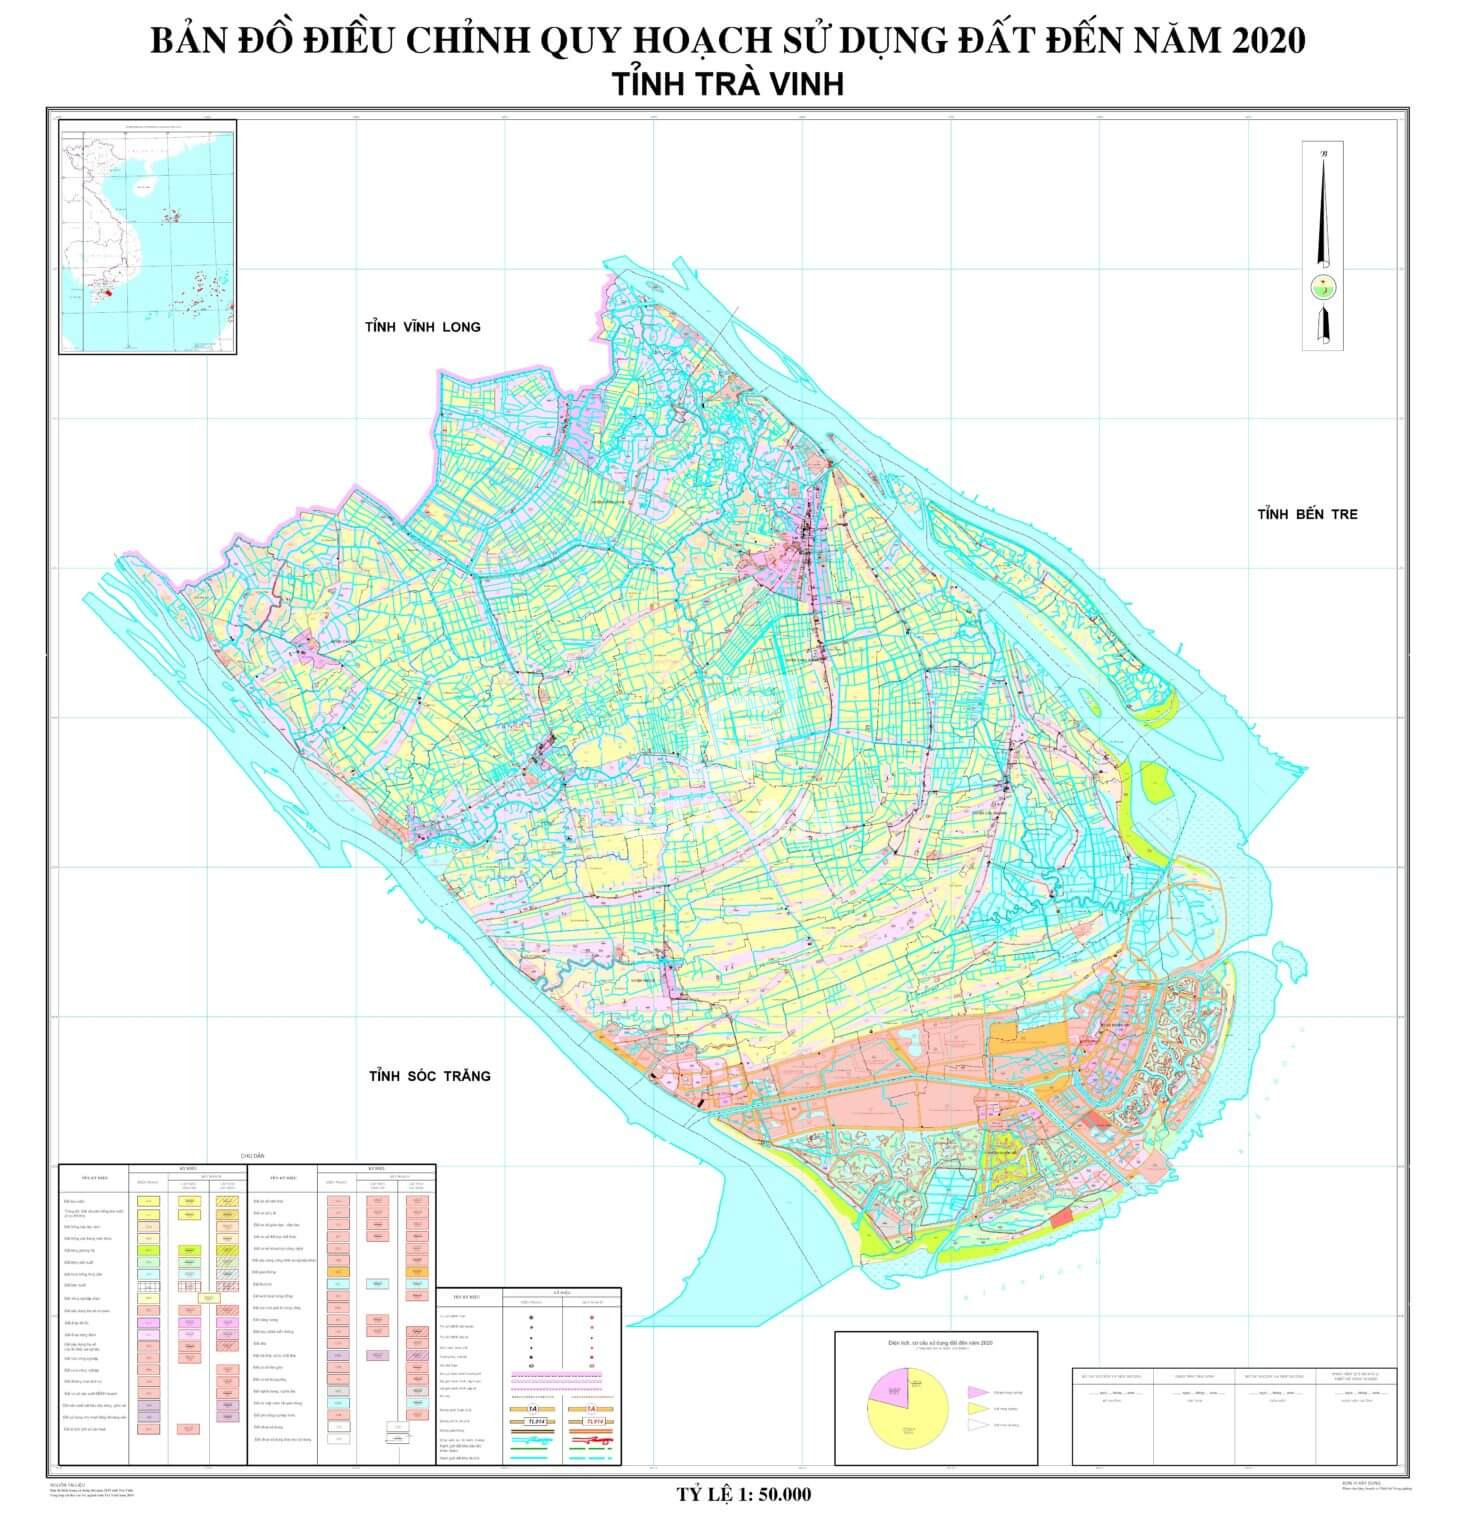 Bản đồ quy hoạch đất tỉnh Trà Vinh năm 2020